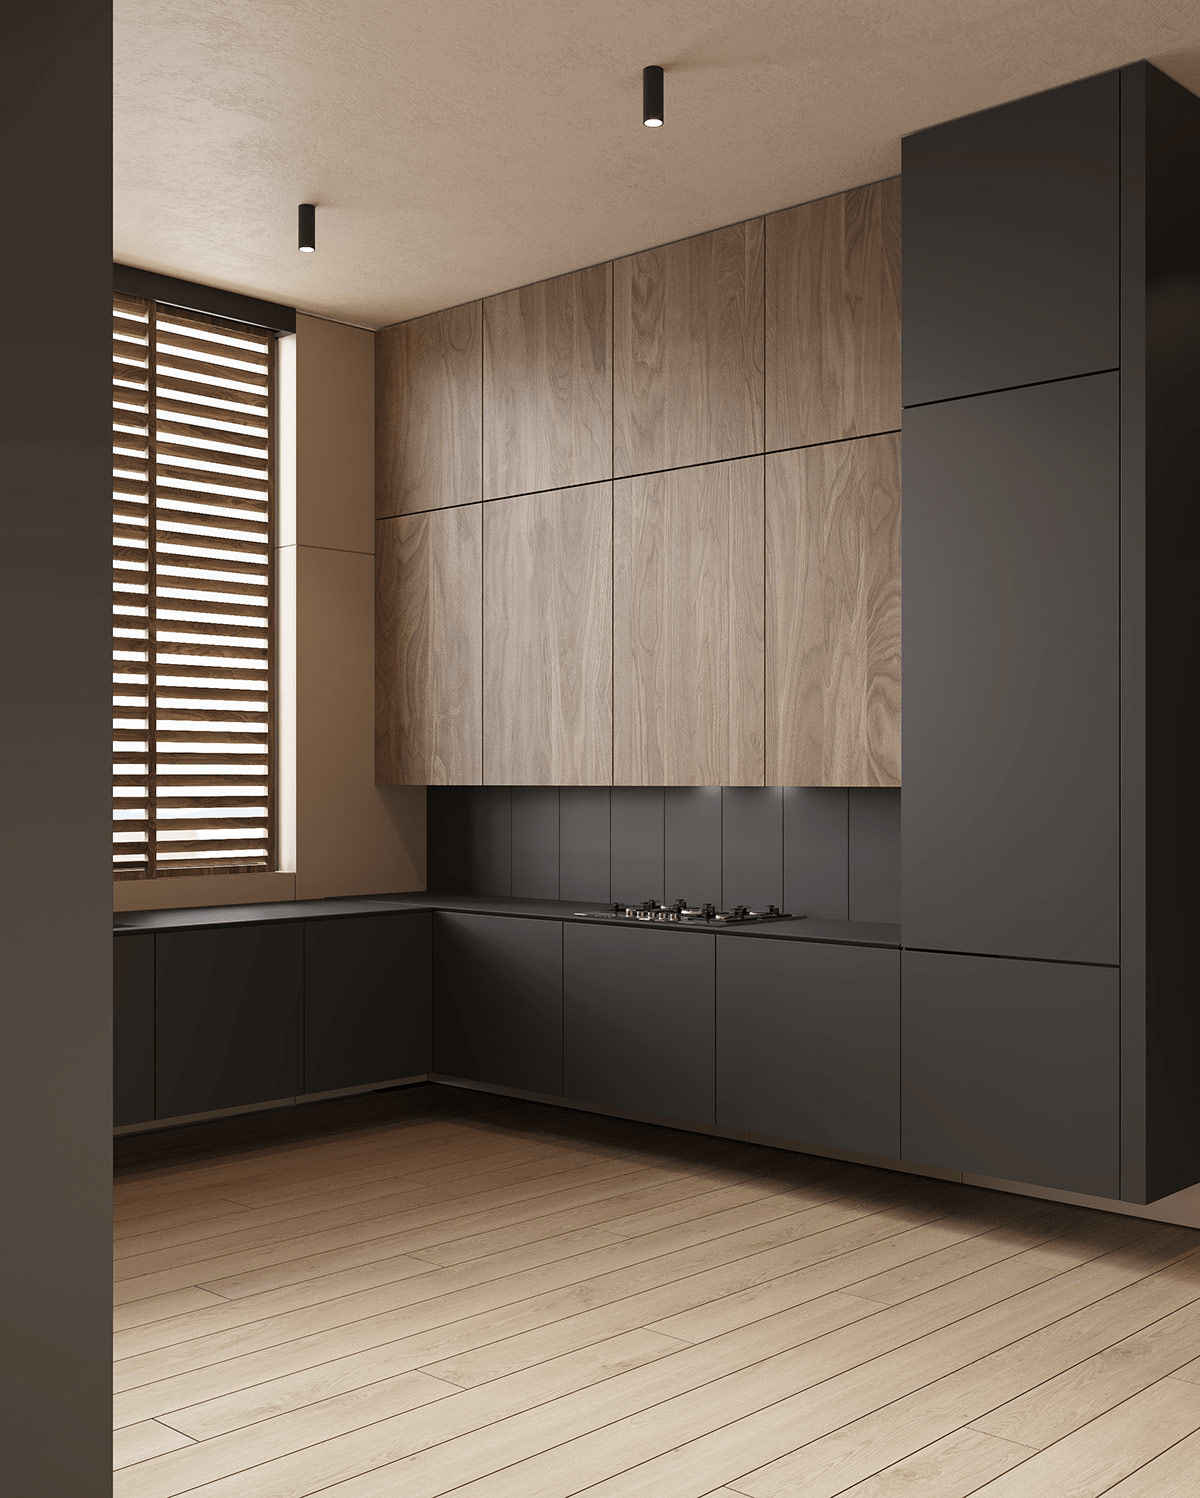 酷黑搭配木质色调：瑞典现代豪华公寓